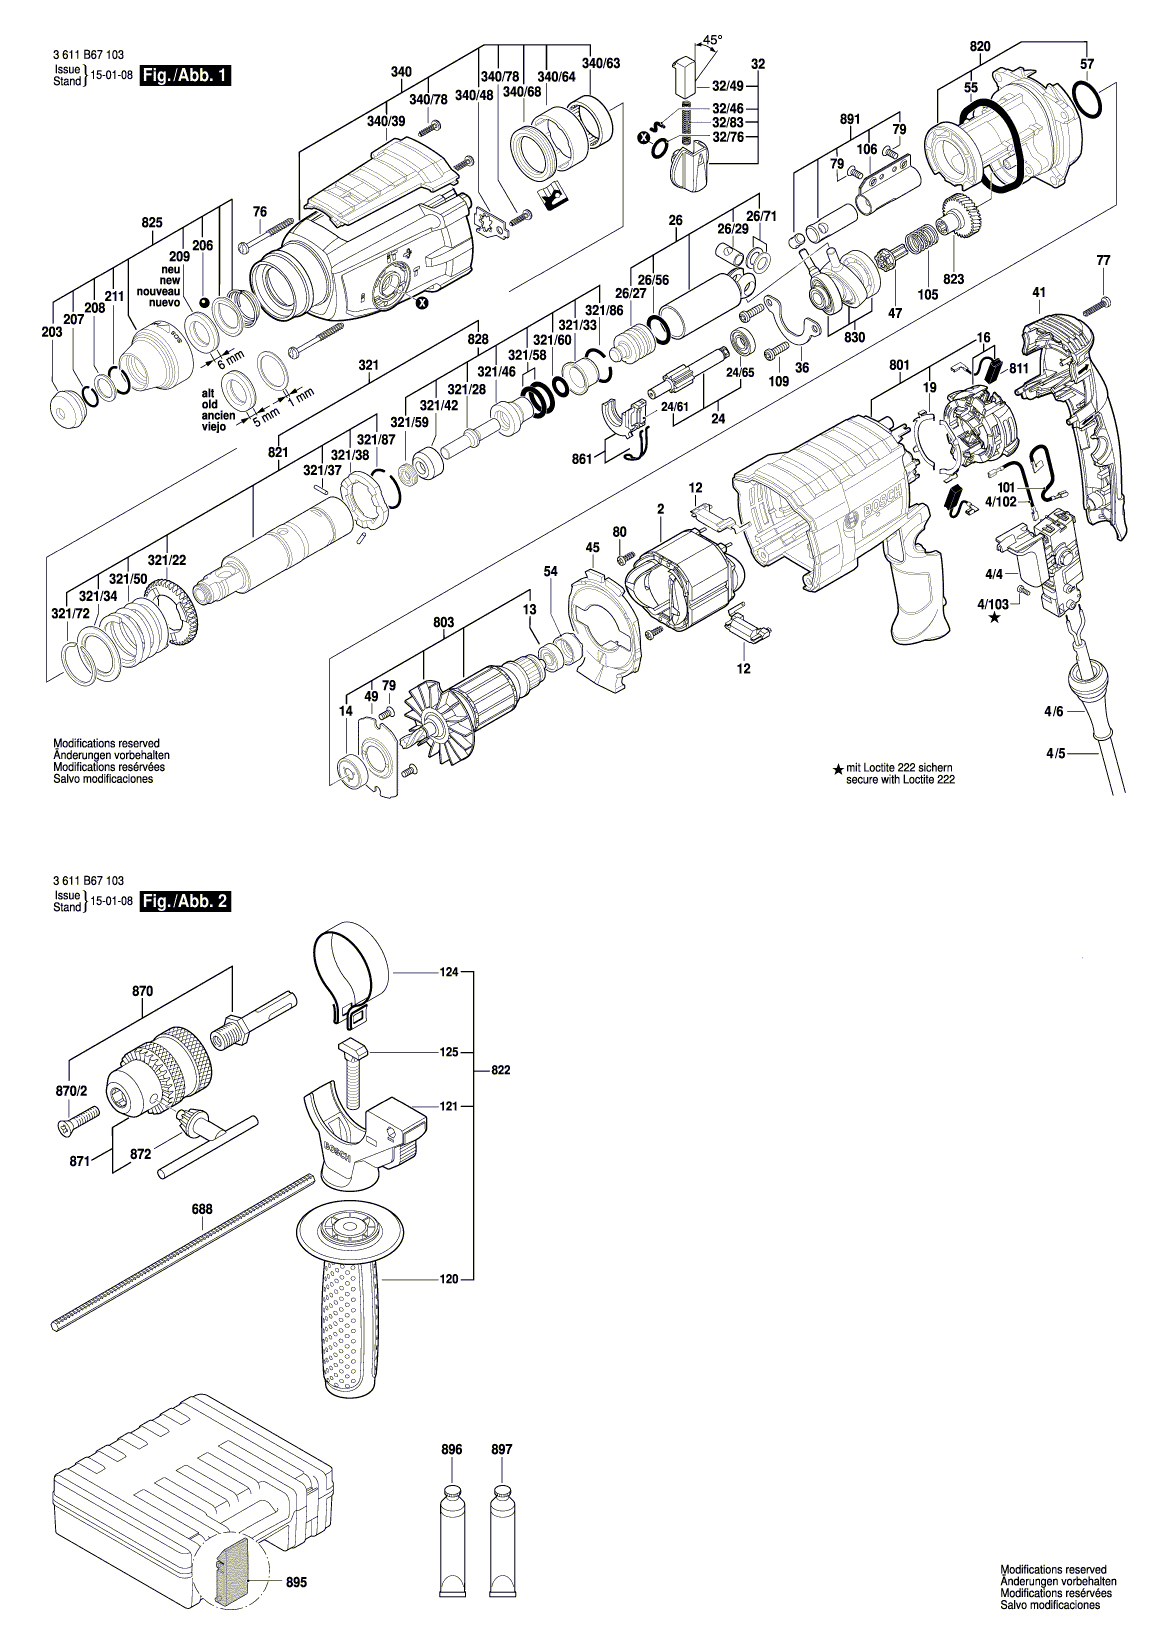 Схема на Перфоратор Bosch GBH 2-25 DV (3 611 B67 103)